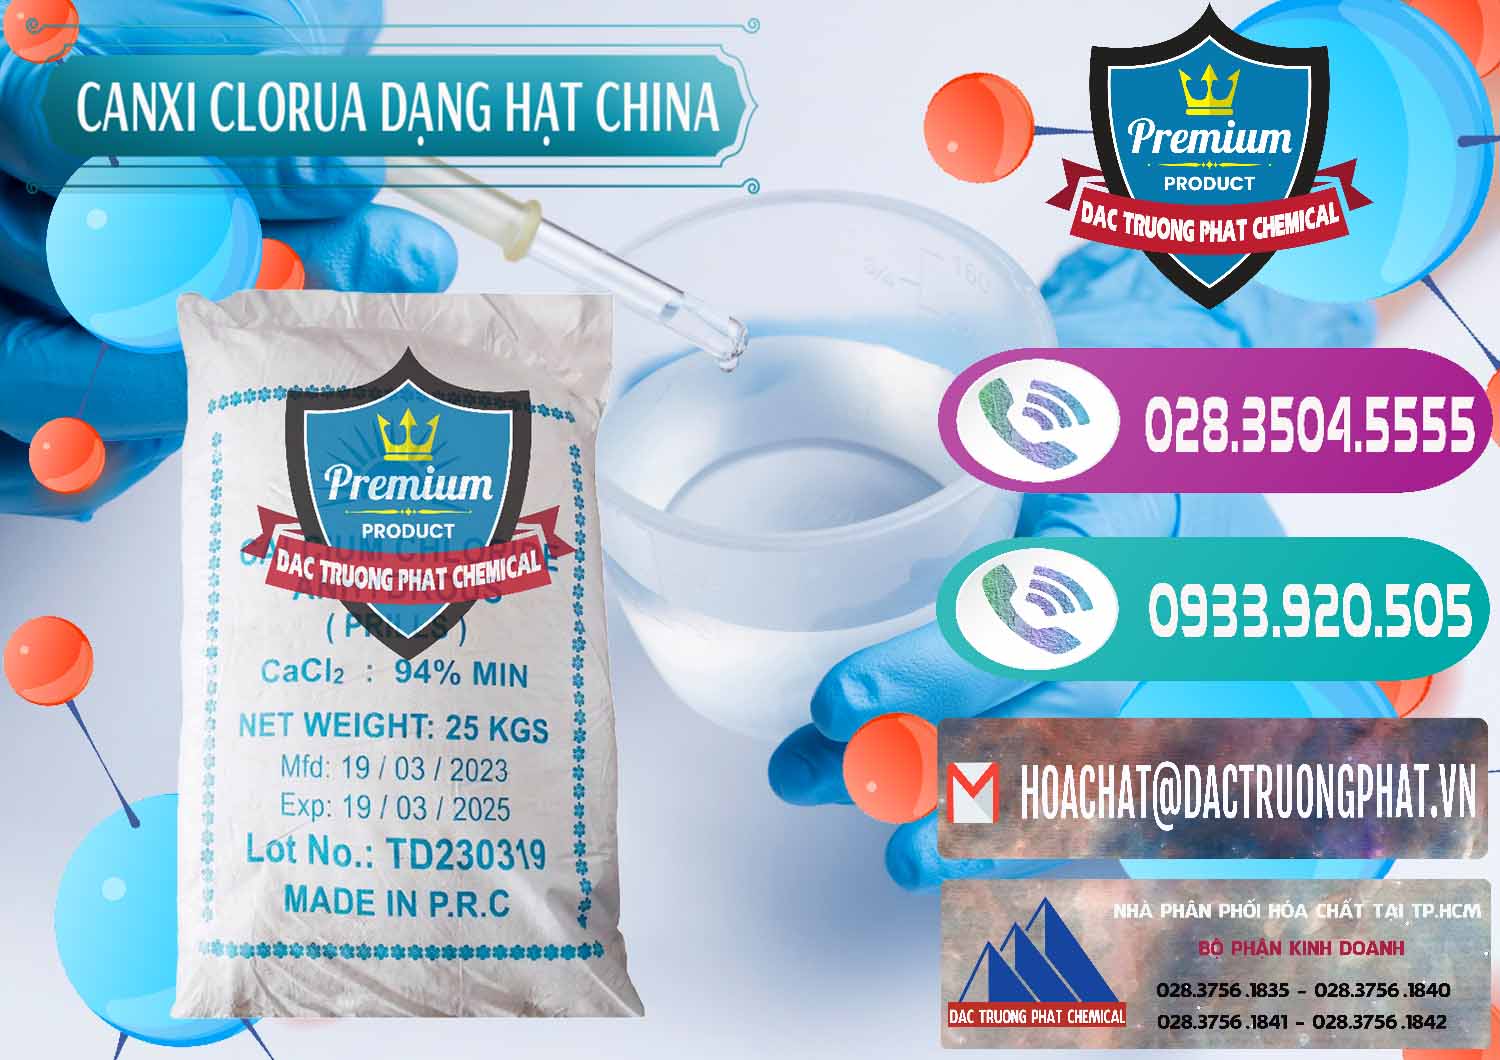 Cty bán & phân phối CaCl2 – Canxi Clorua 94% Dạng Hạt Trung Quốc China - 0373 - Công ty chuyên cung cấp ( bán ) hóa chất tại TP.HCM - hoachatxulynuoc.com